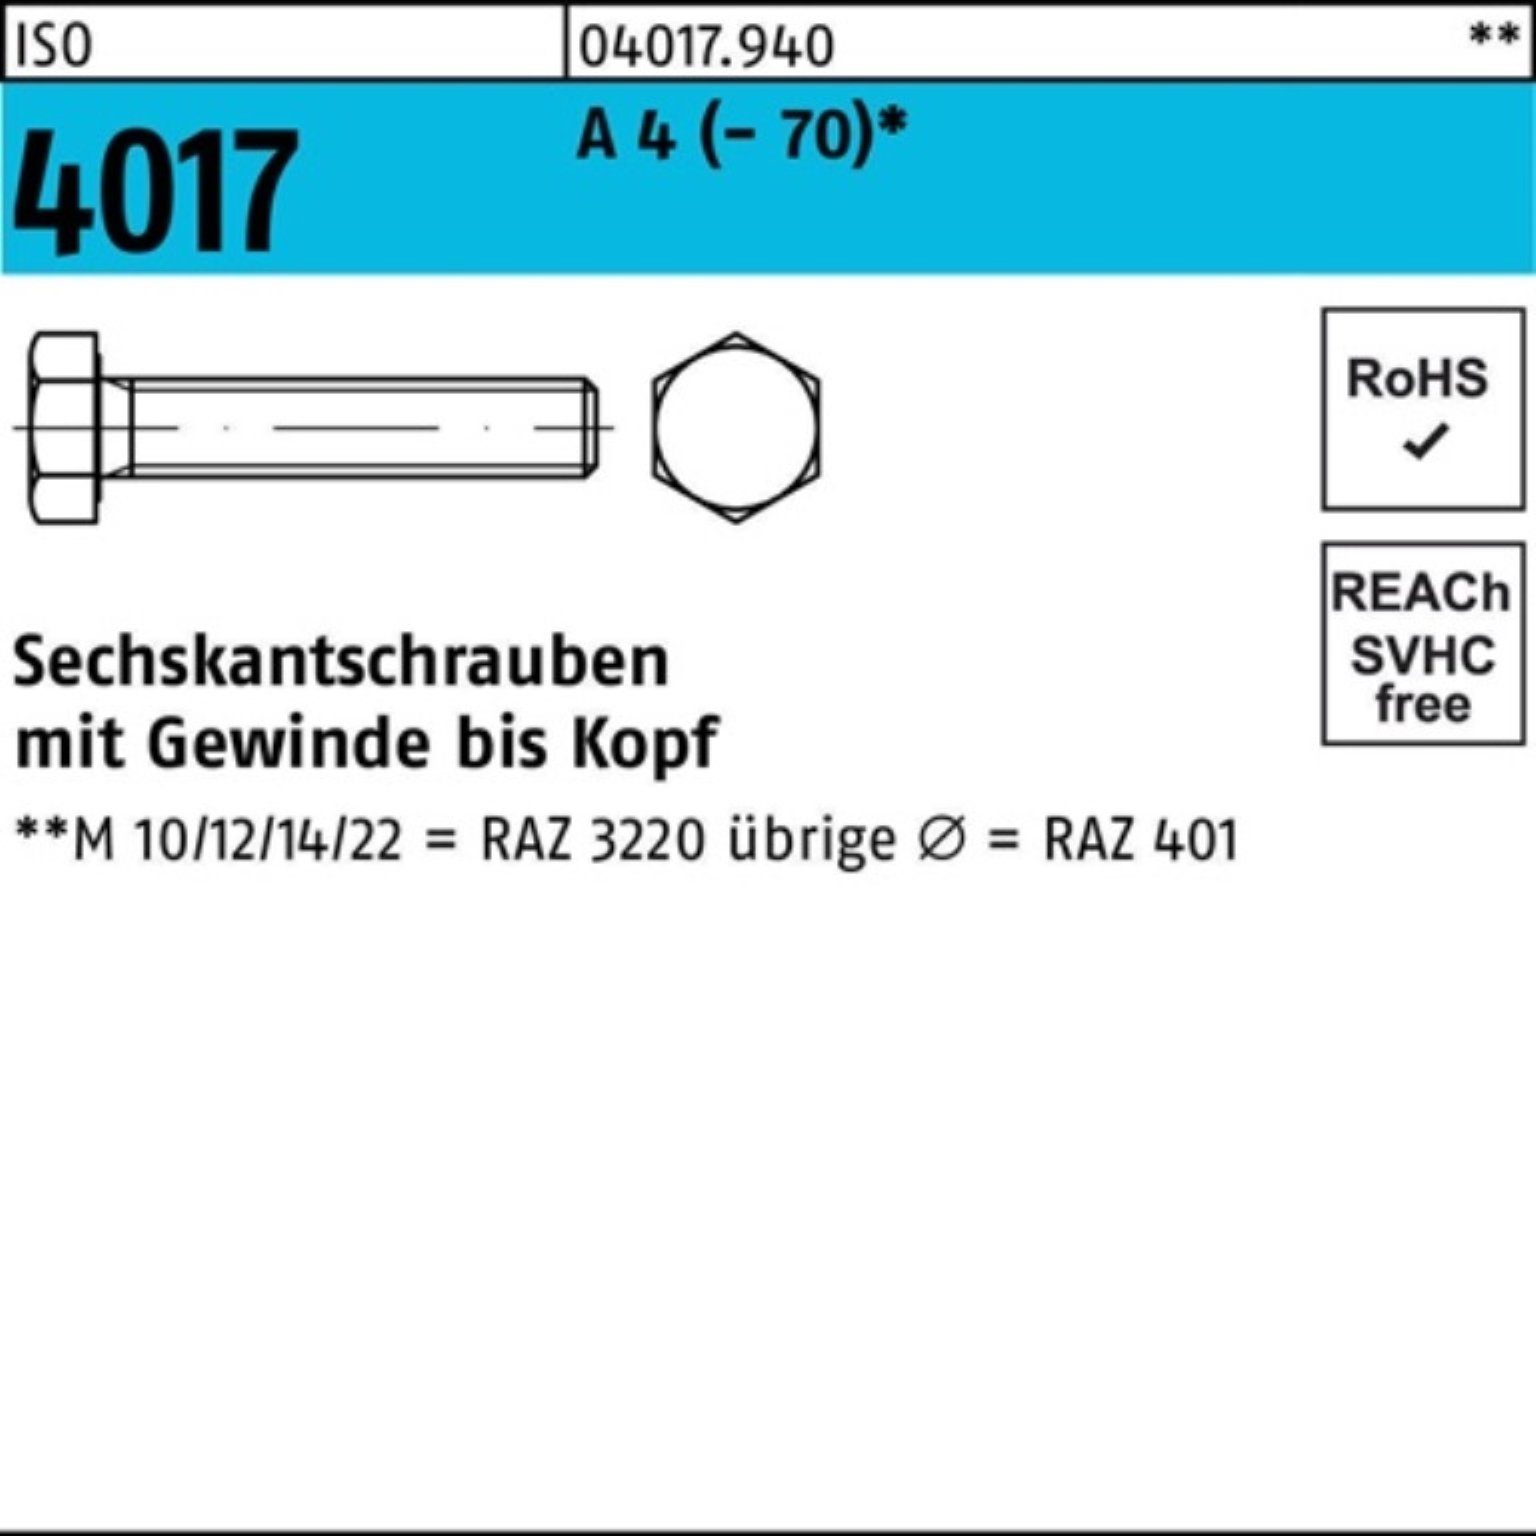 Bufab Sechskantschraube 100er Pack Sechskantschraube ISO 4017 VG M27x 50 A 4 (70) 1 Stück I